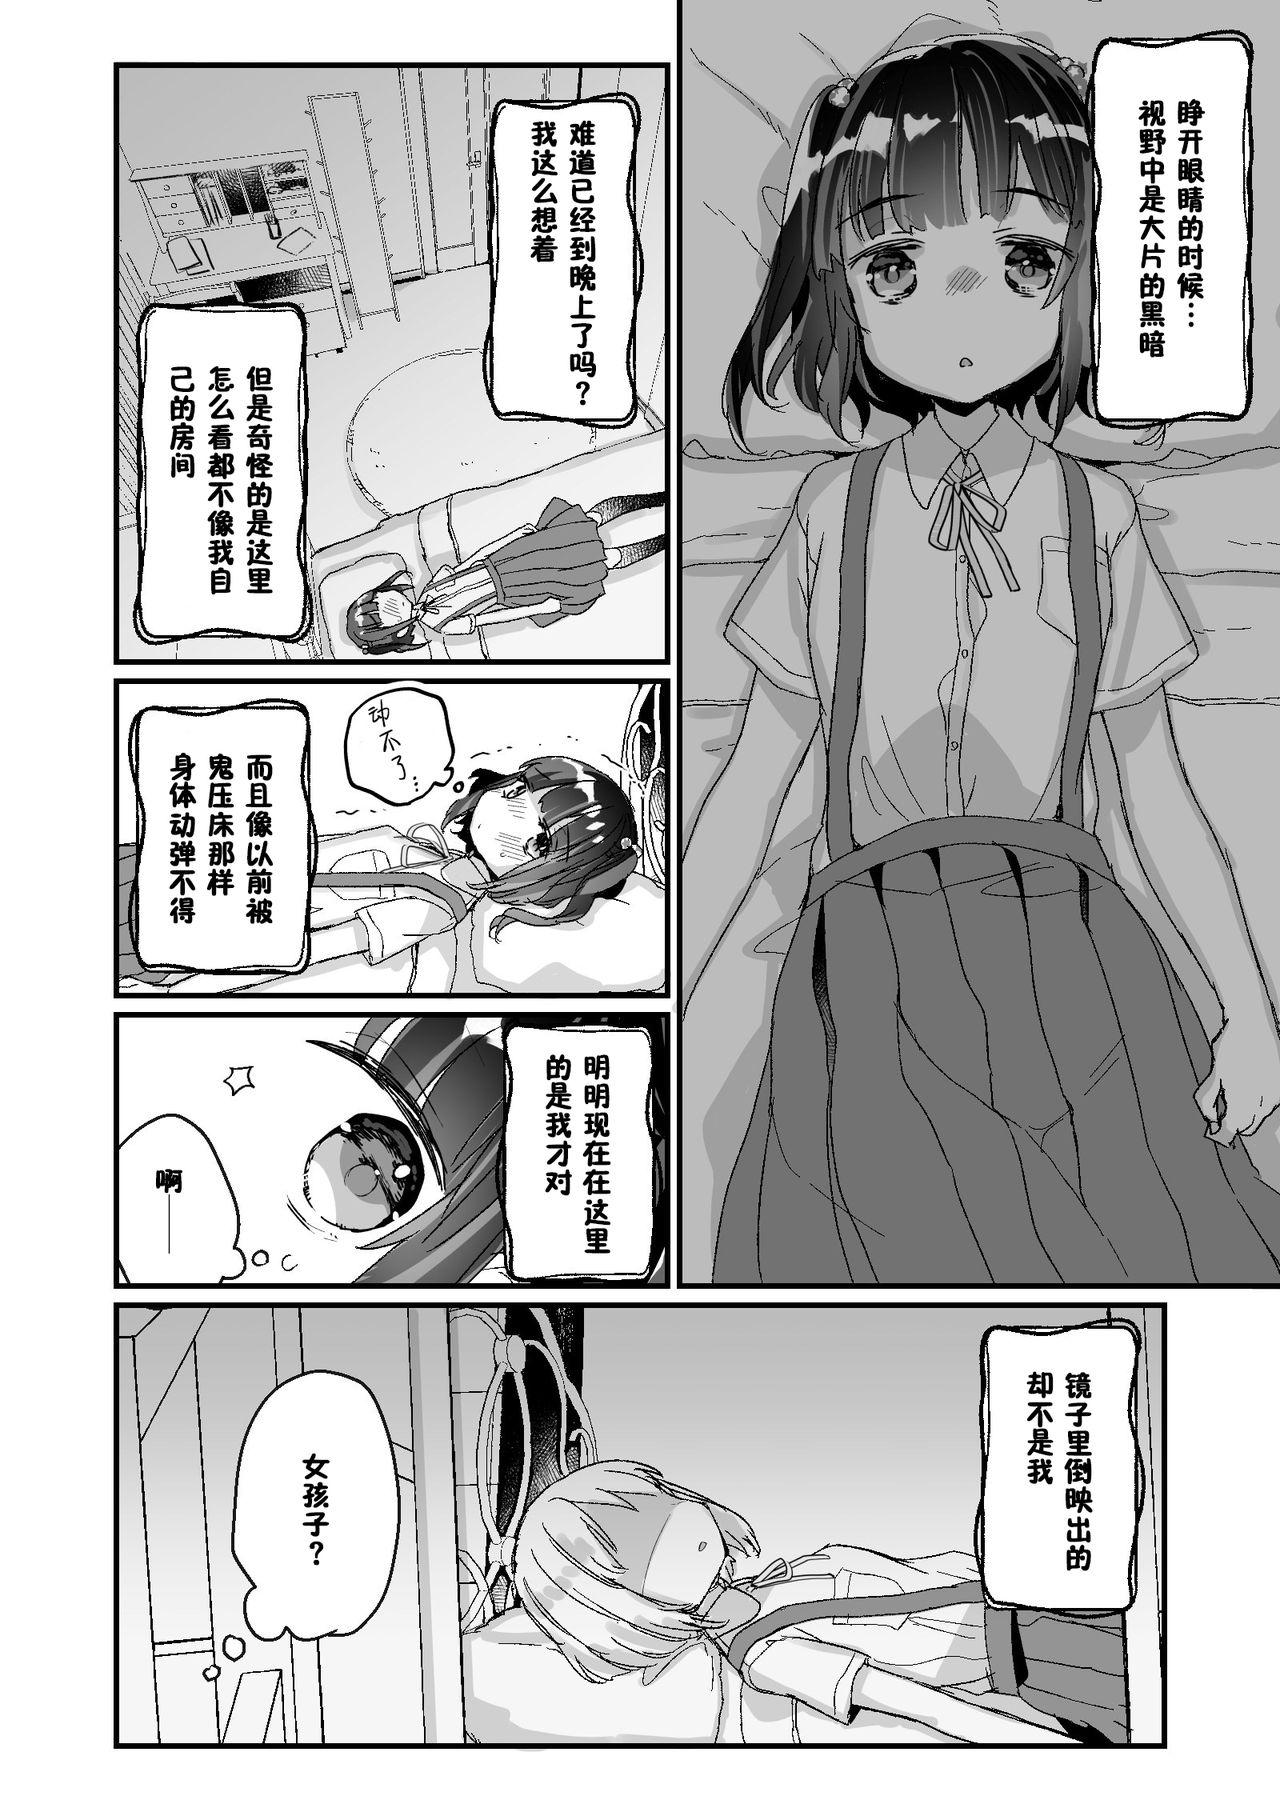 Secret Uchi ni wa Yuurei-san ga Imasu Yokorenbo Hen | 我的家里有一位幽灵先生 错爱篇 - Original Exgirlfriend - Page 11